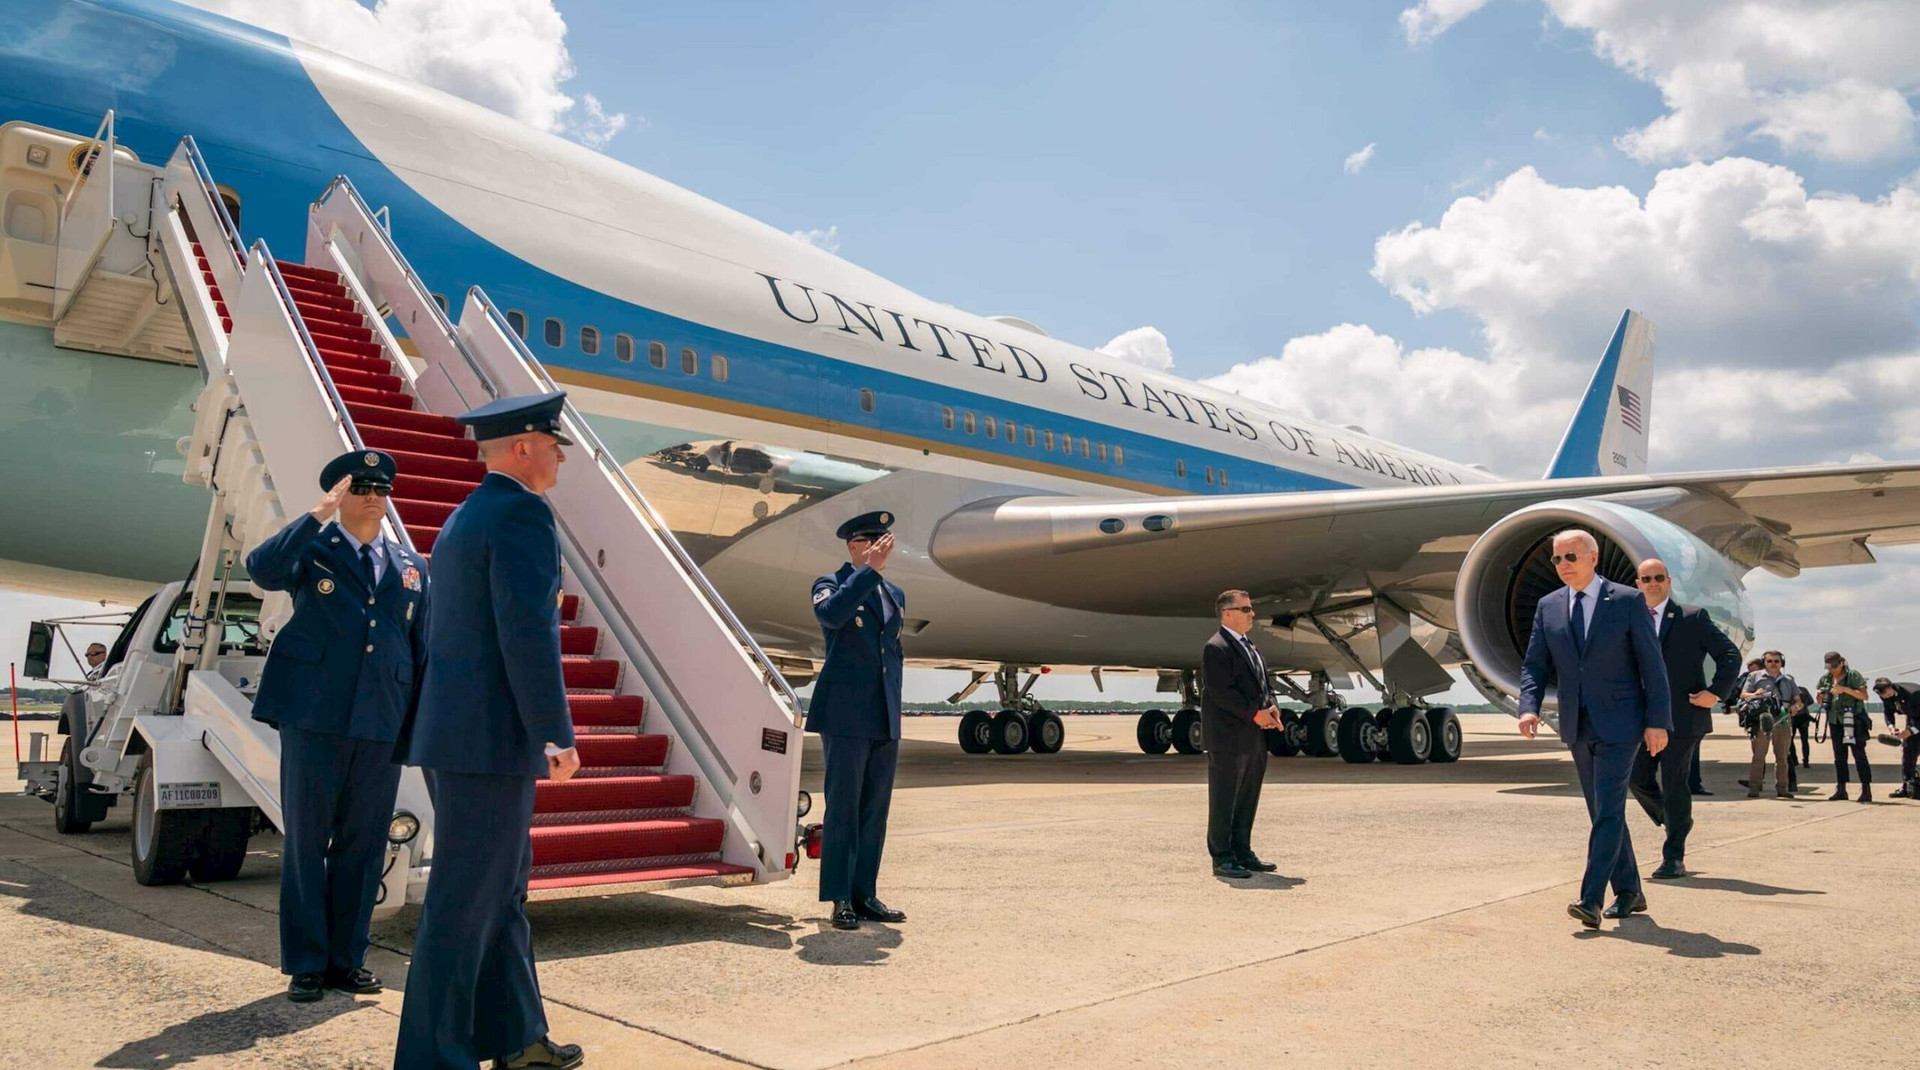 "Nhà Trắng trên không" đời mới nhất của Tổng thống Mỹ: Giá cực khủng, hoạt động bất chấp chiến tranh hạt nhân - Ảnh 1.